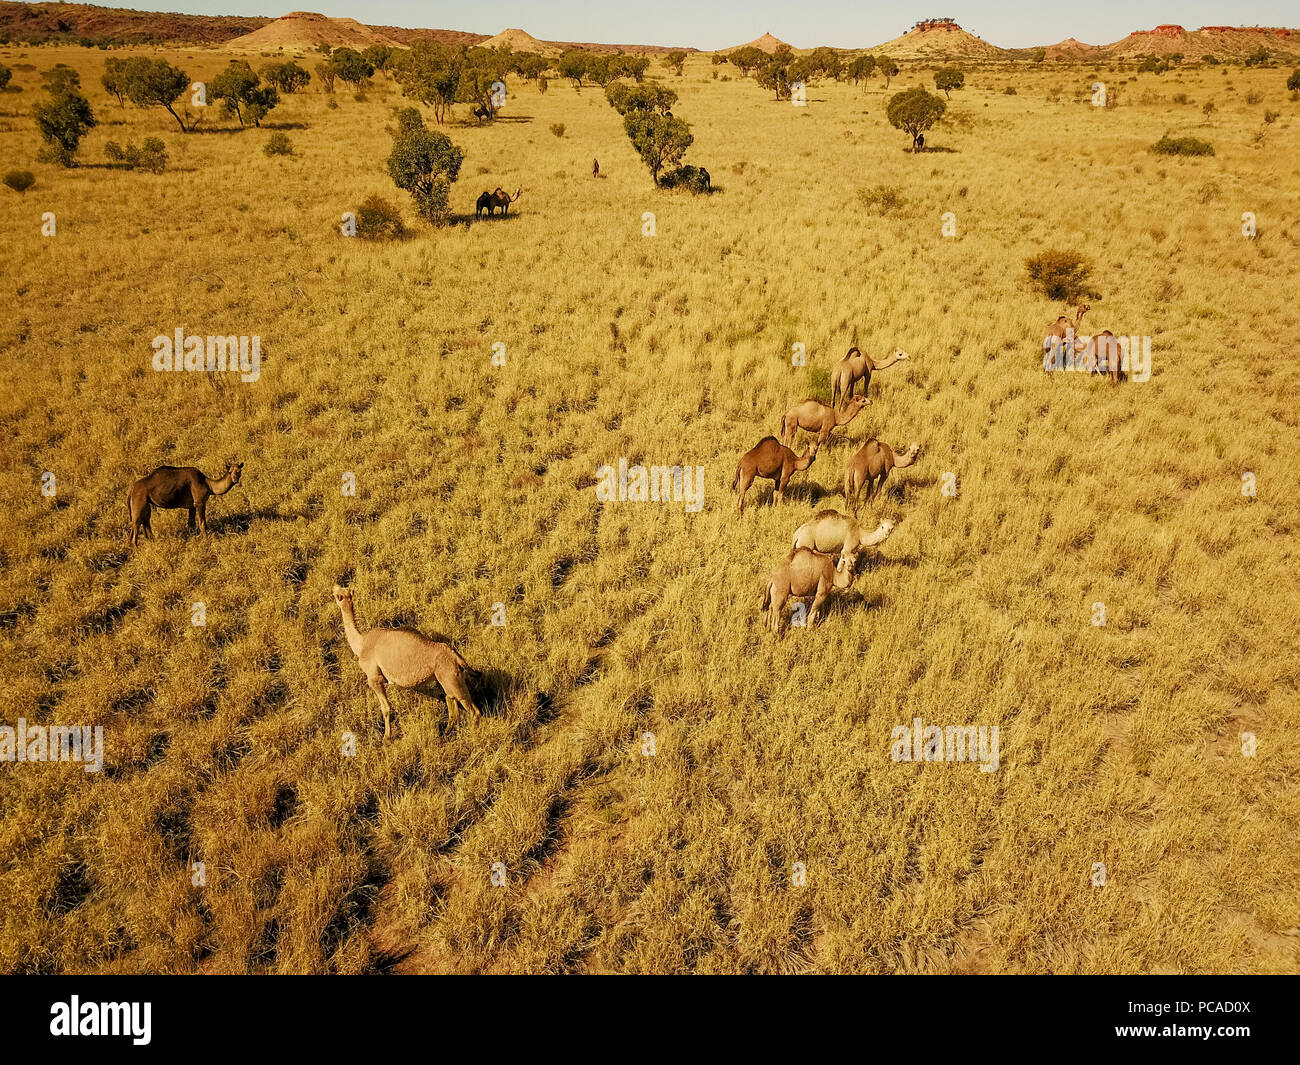 Des chameaux dans le désert australien, près de Laverton, Australie occidentale Banque D'Images